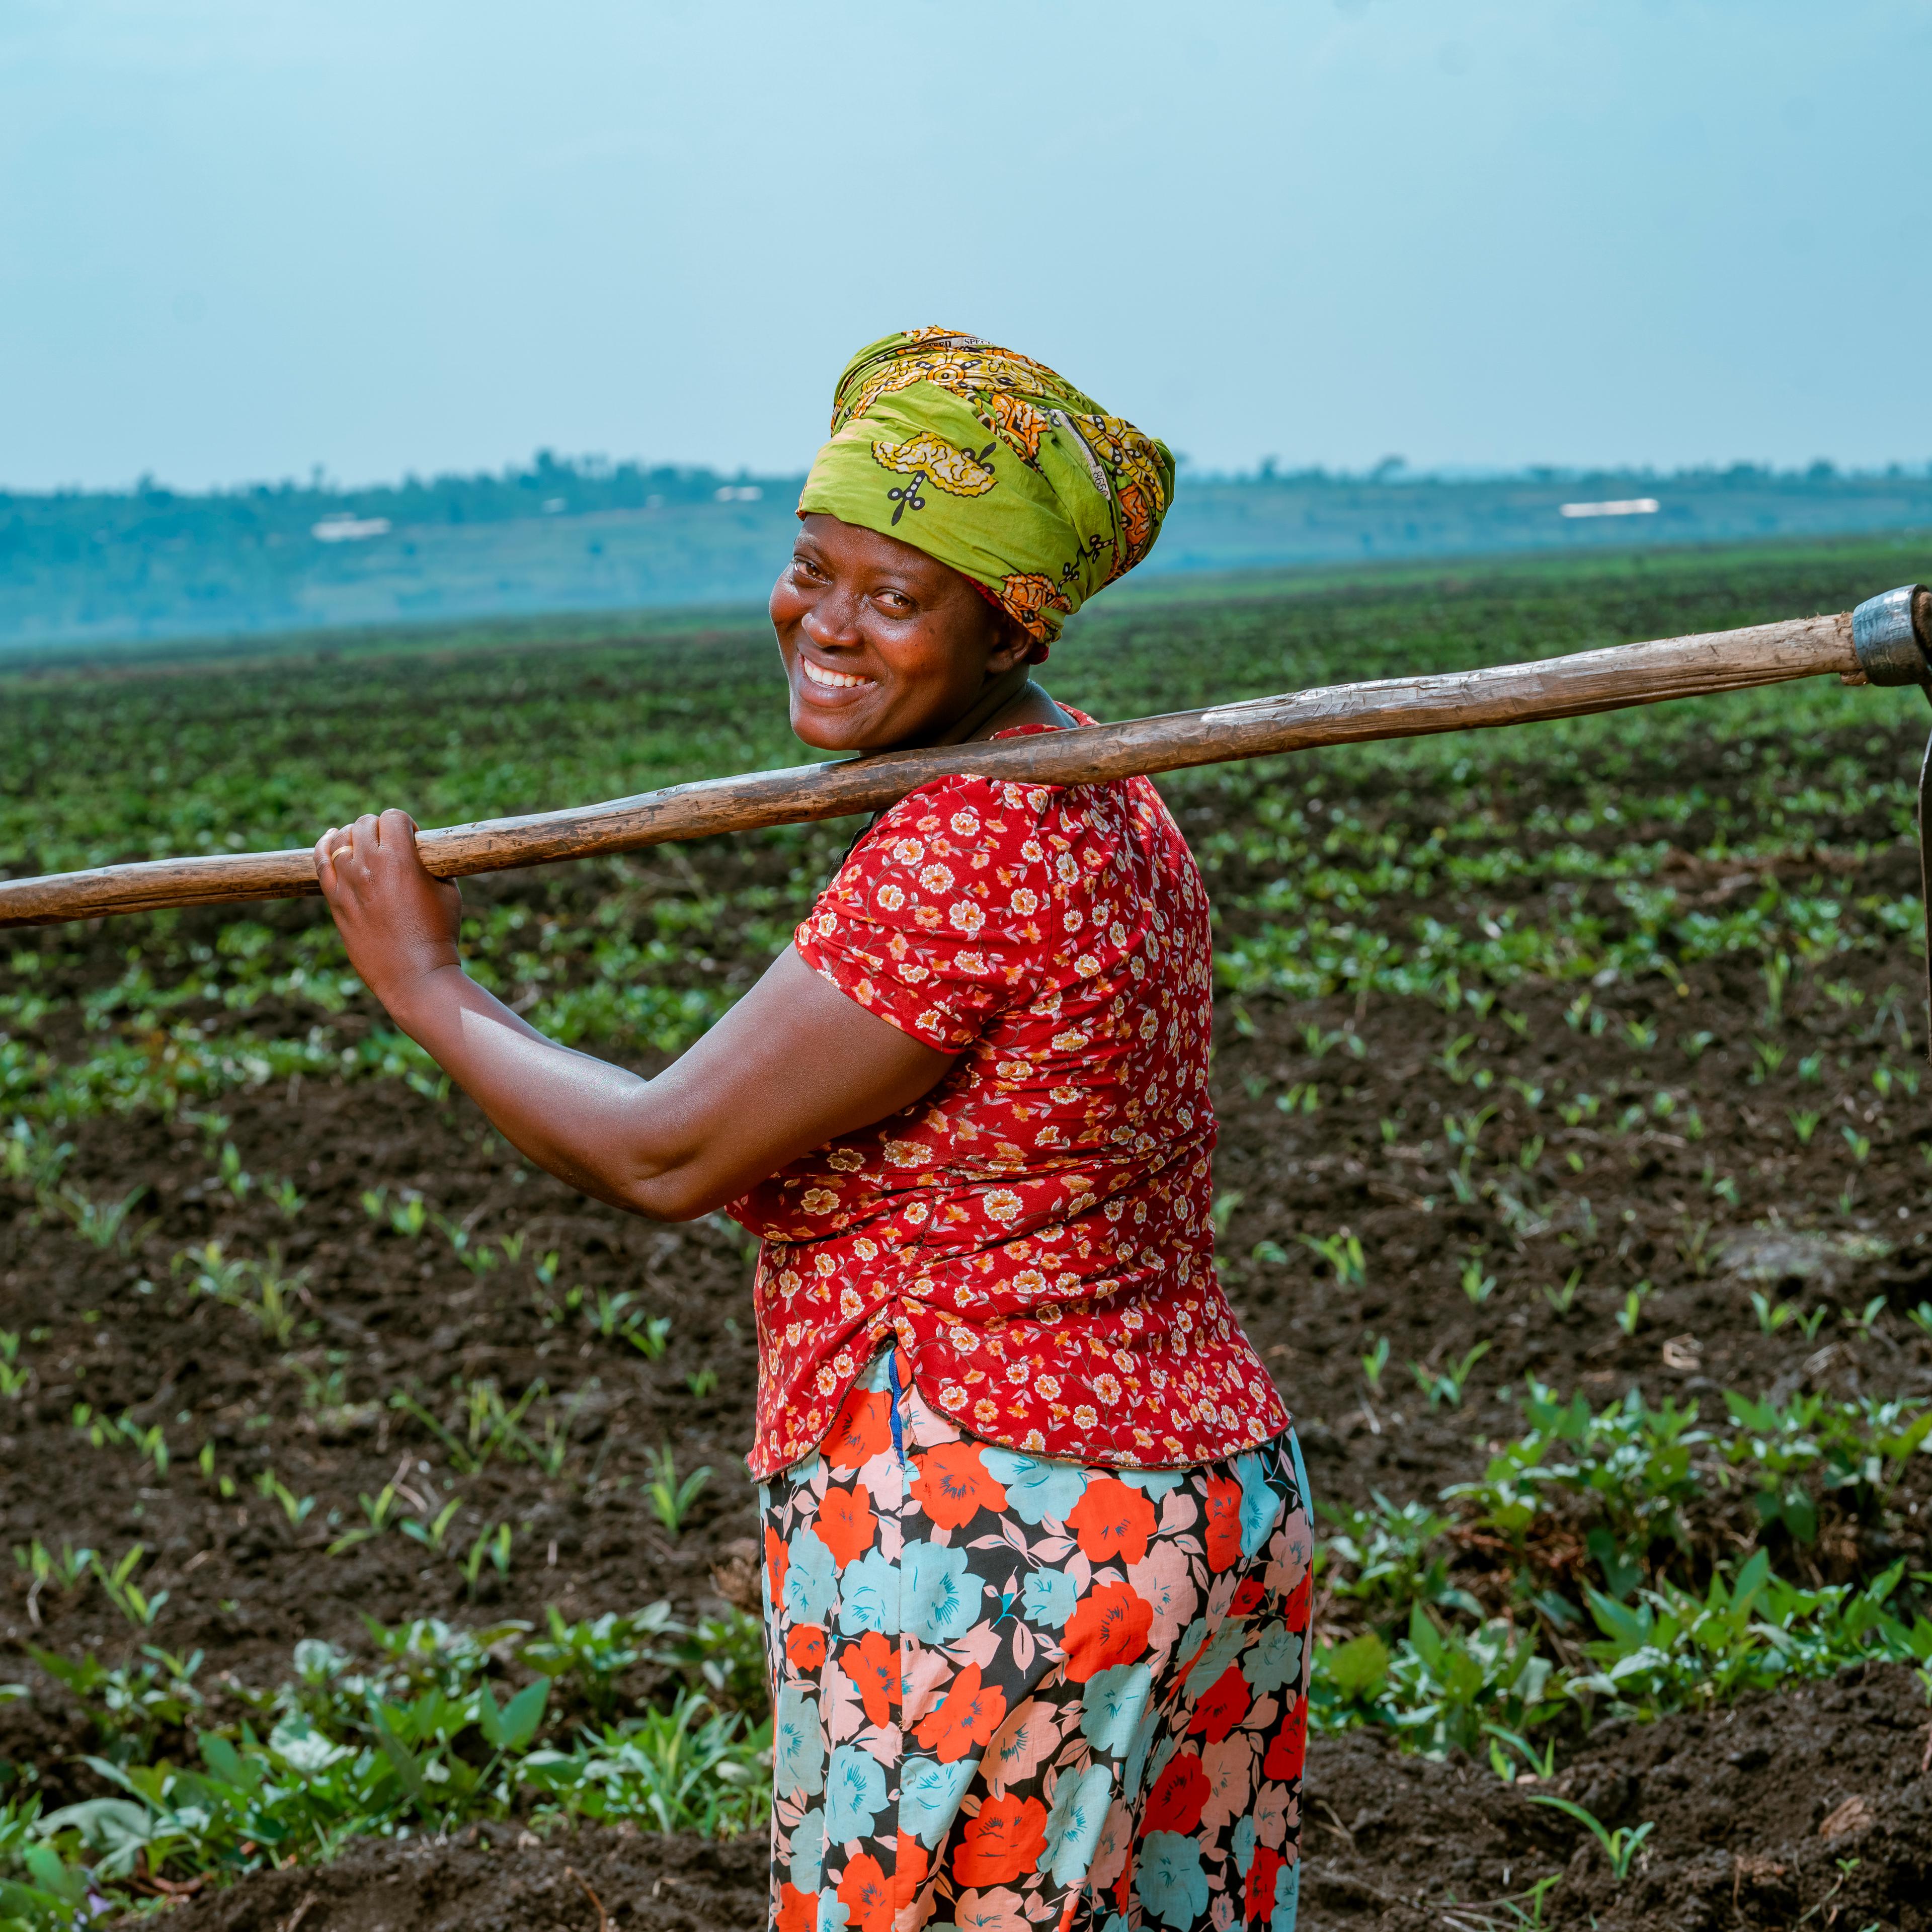 Woman smallholder farmer in a field